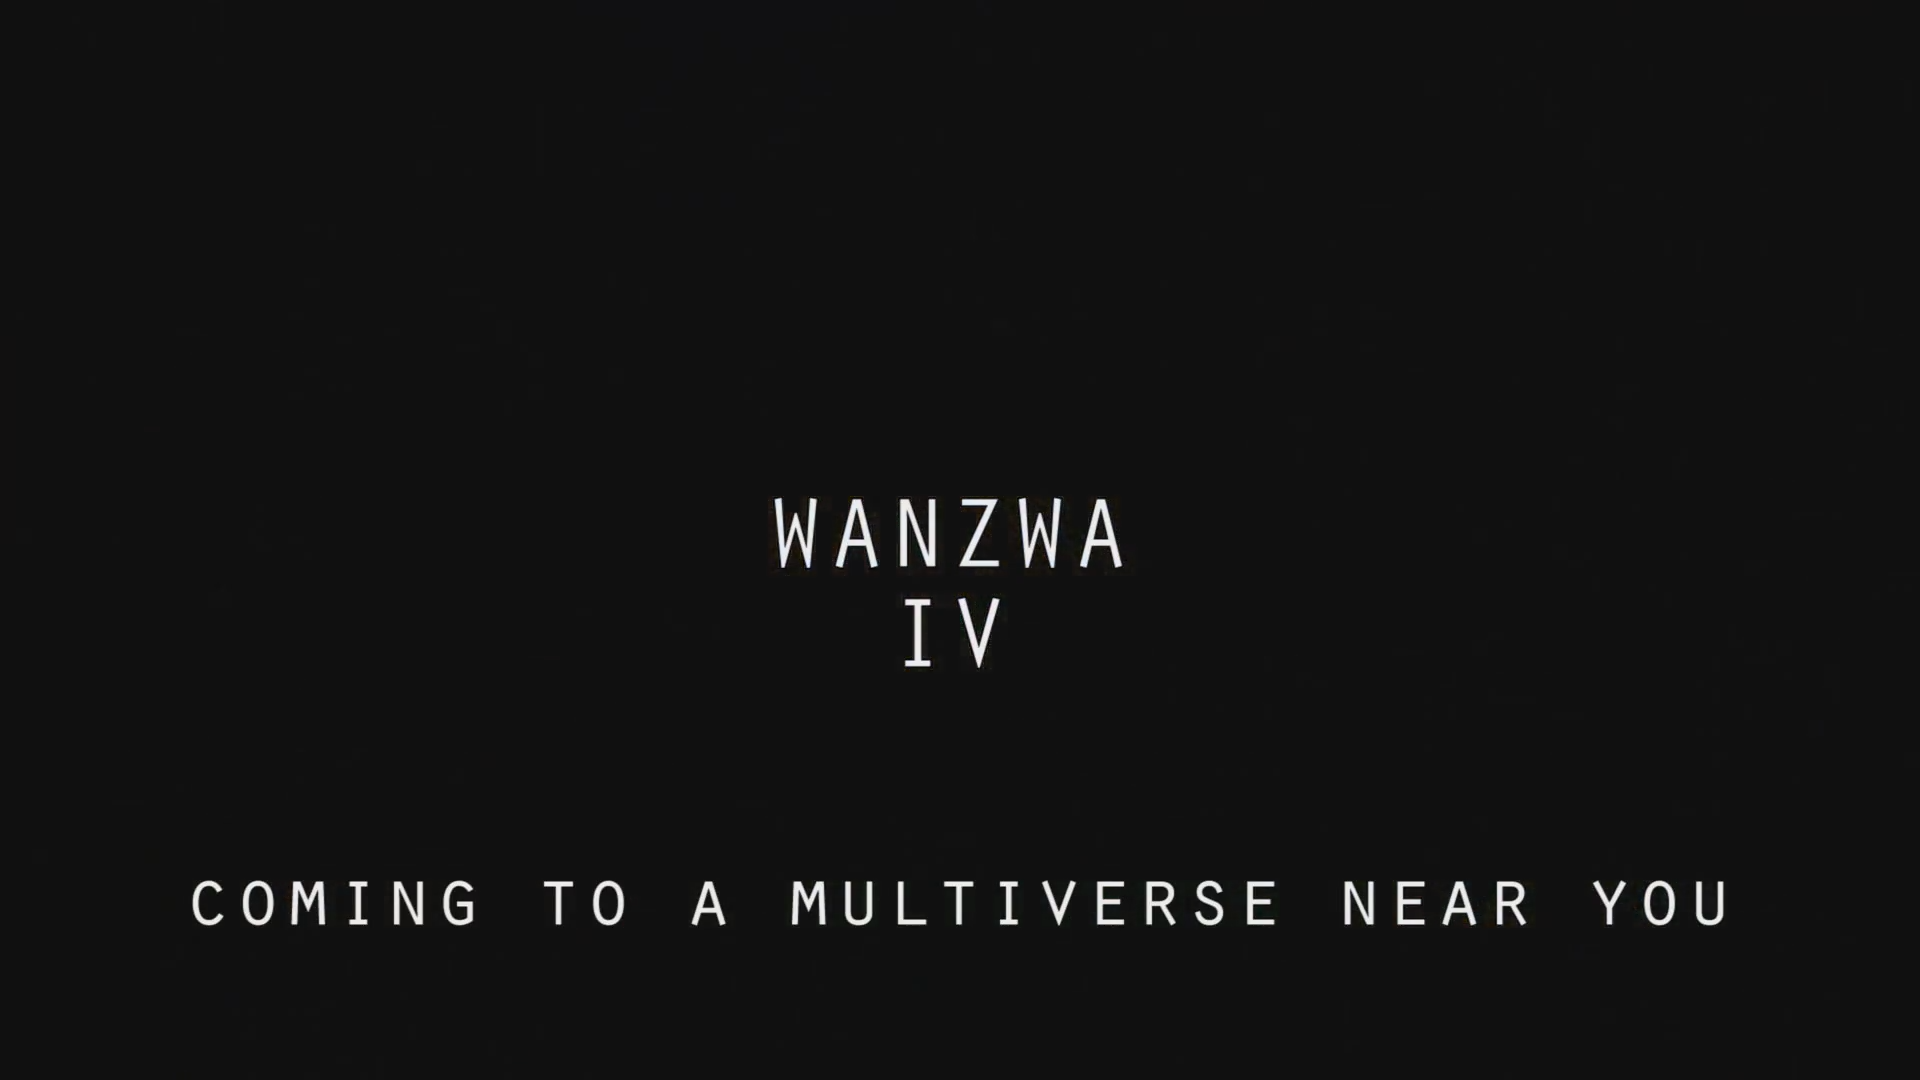 Wanzwa IV